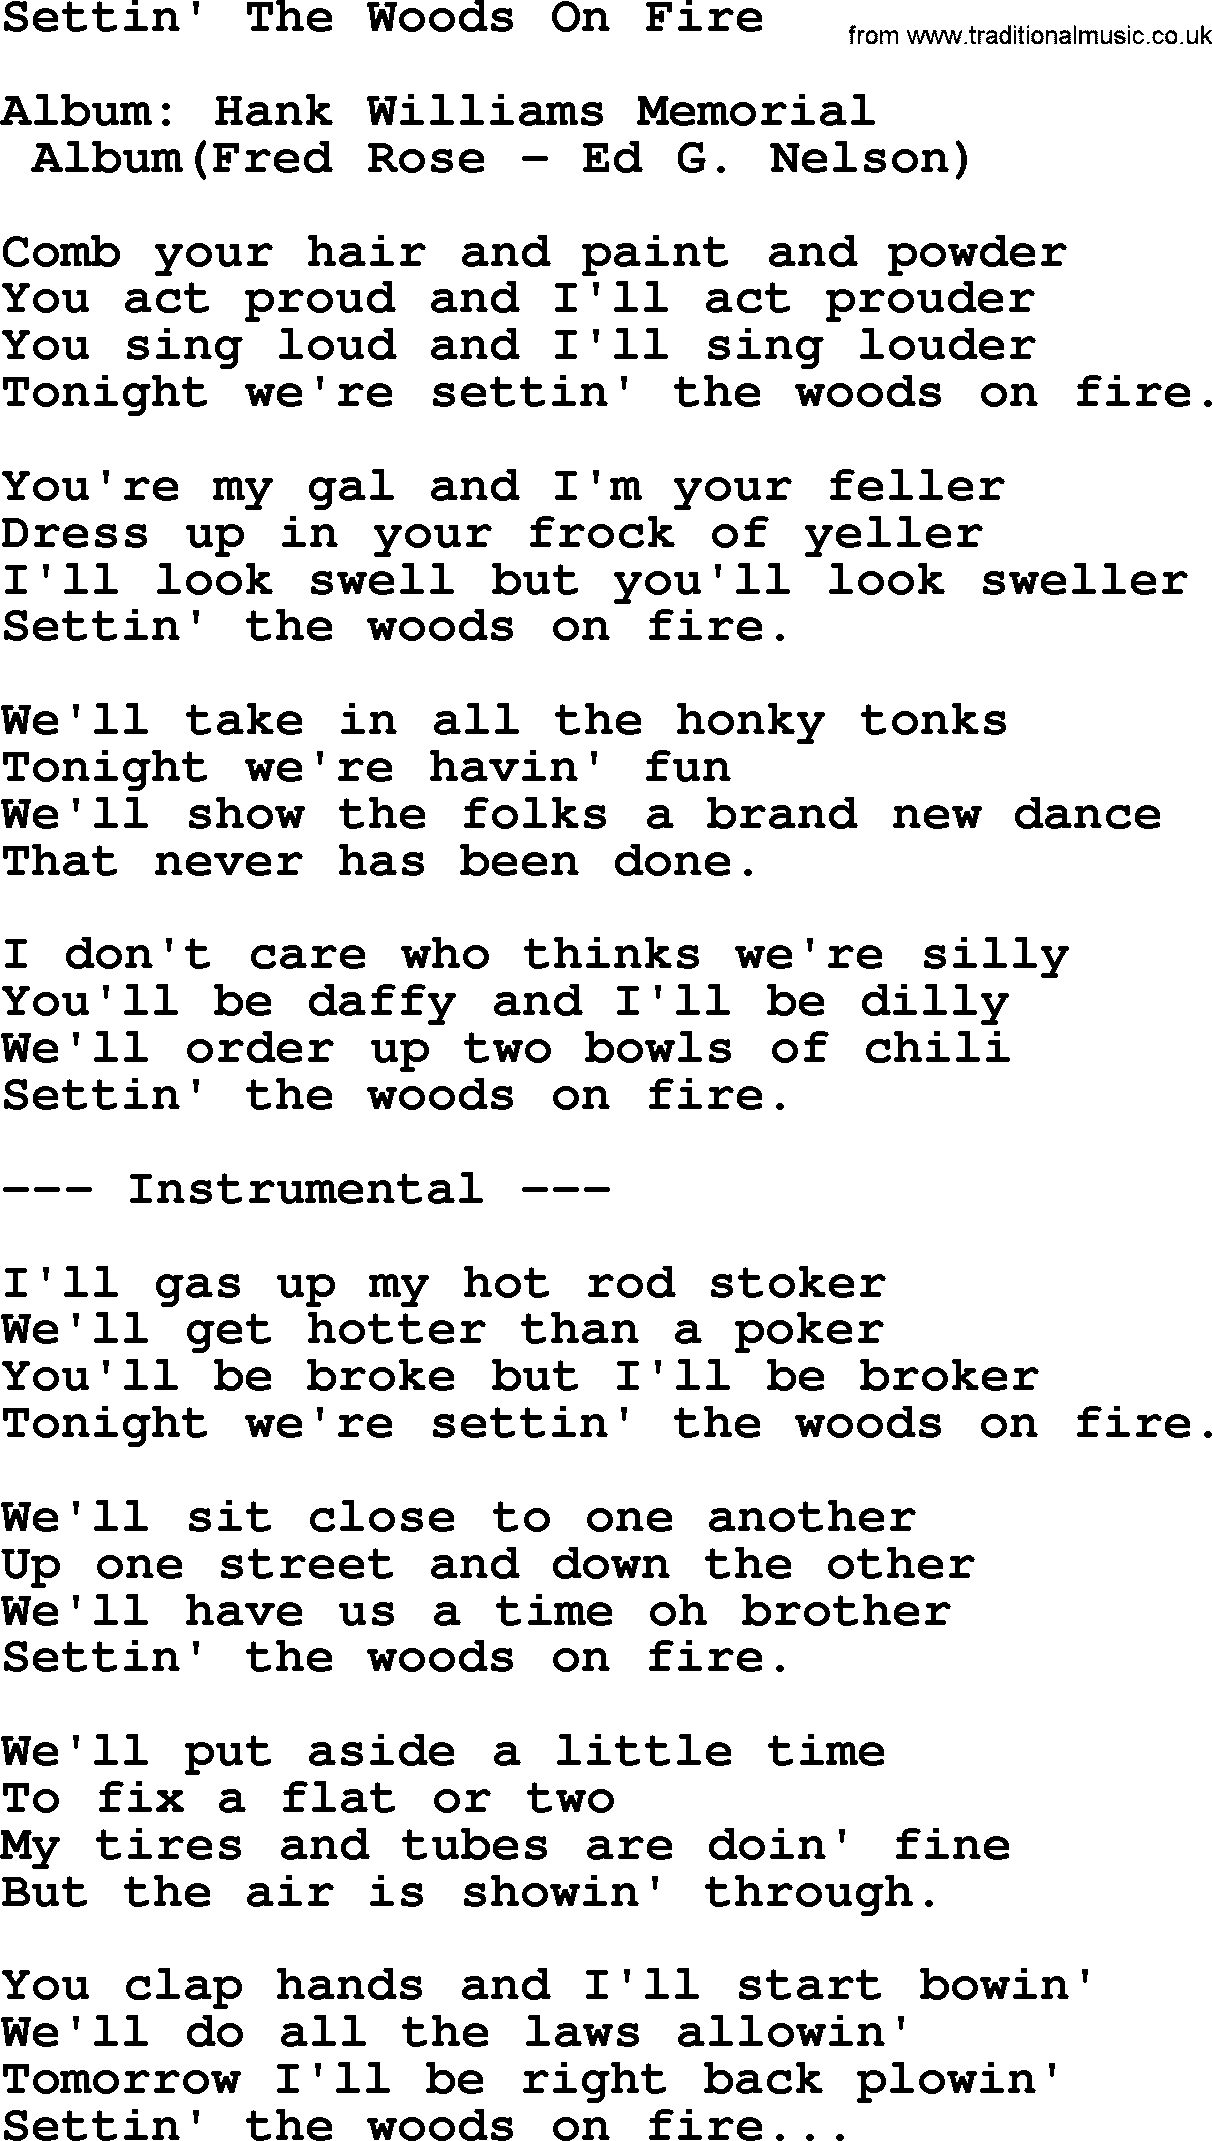 Hank Williams song Settin' The Woods On Fire, lyrics